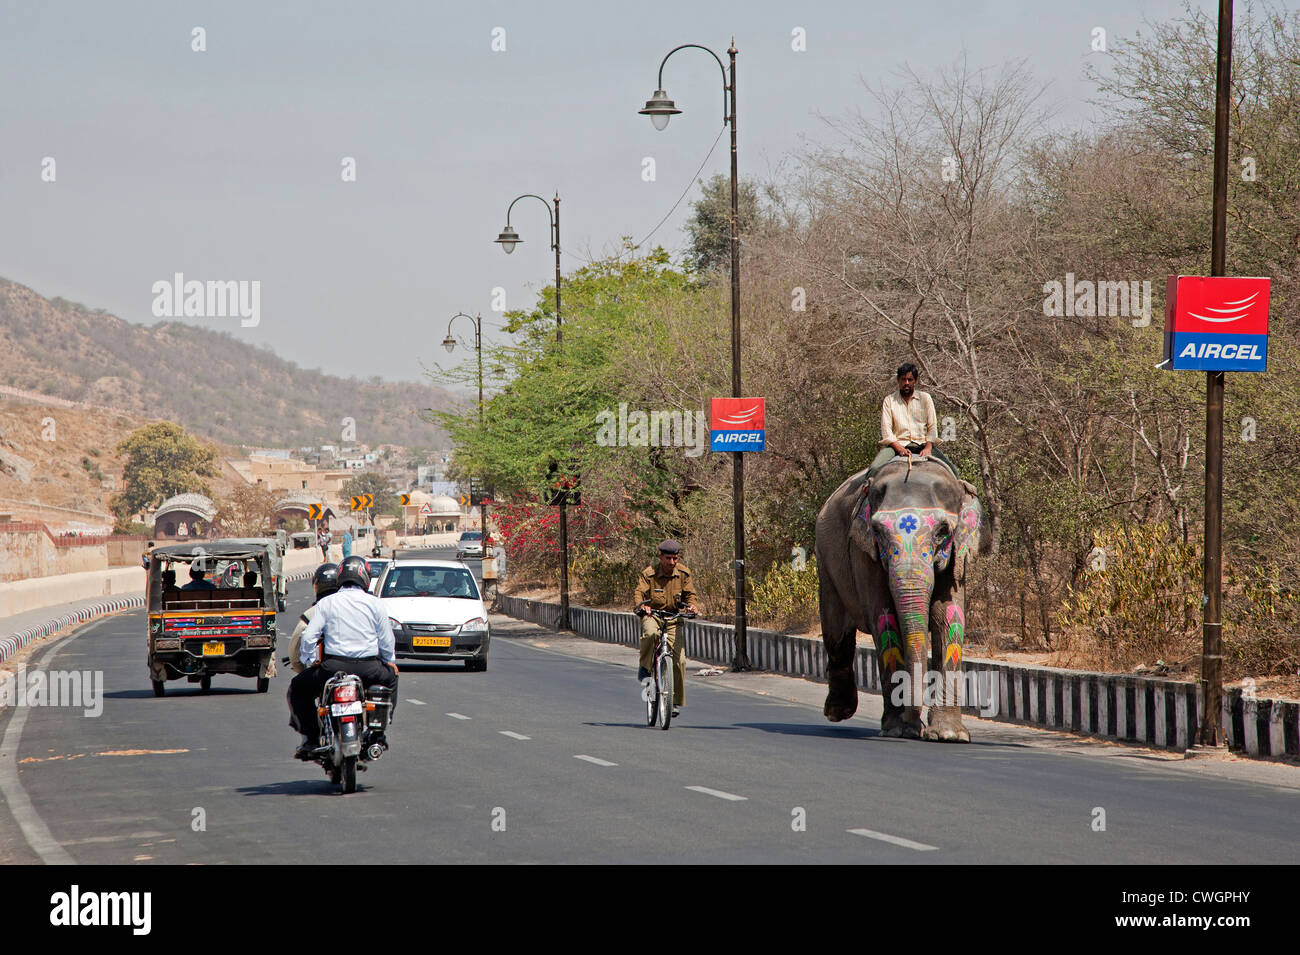 Décorée d'éléphants indiens Mahout équitation sur la route entre le trafic à Jaipur, Rajasthan, Inde Banque D'Images